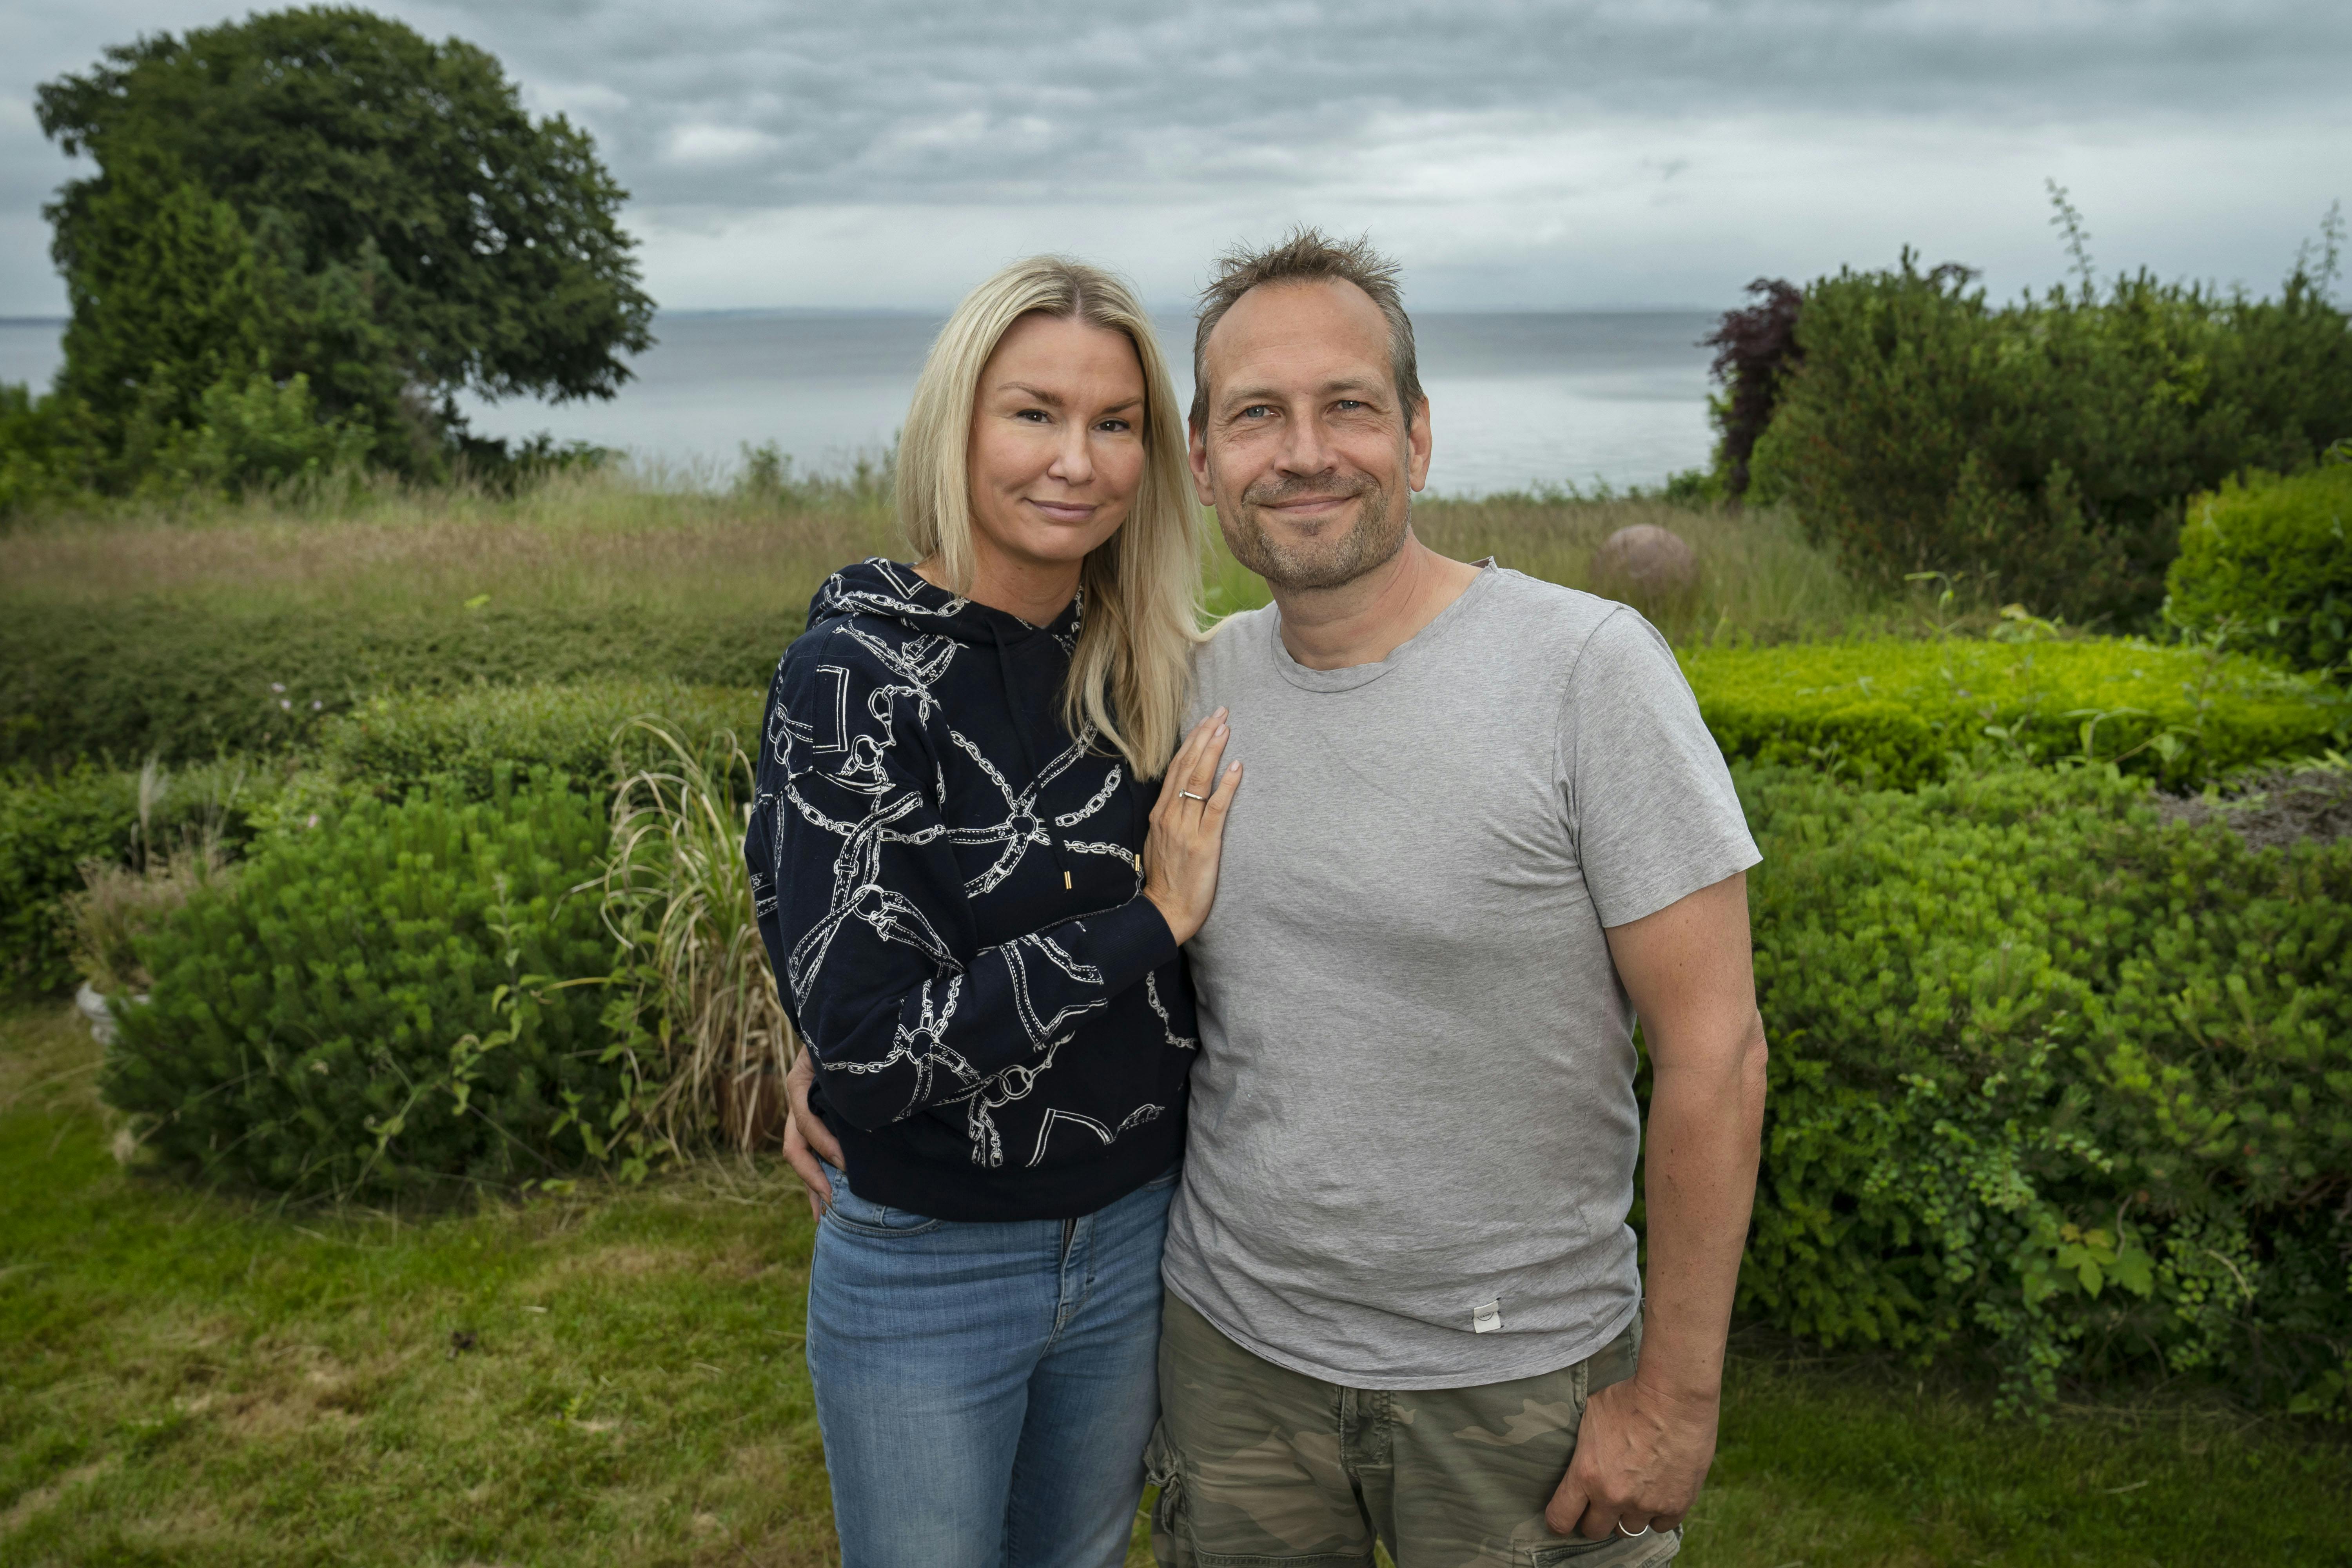 Janiie Buch Thorborg og Martin Buch Thorborgs nye program viser parret første år som hotelejere på Bornholm.

&nbsp;
